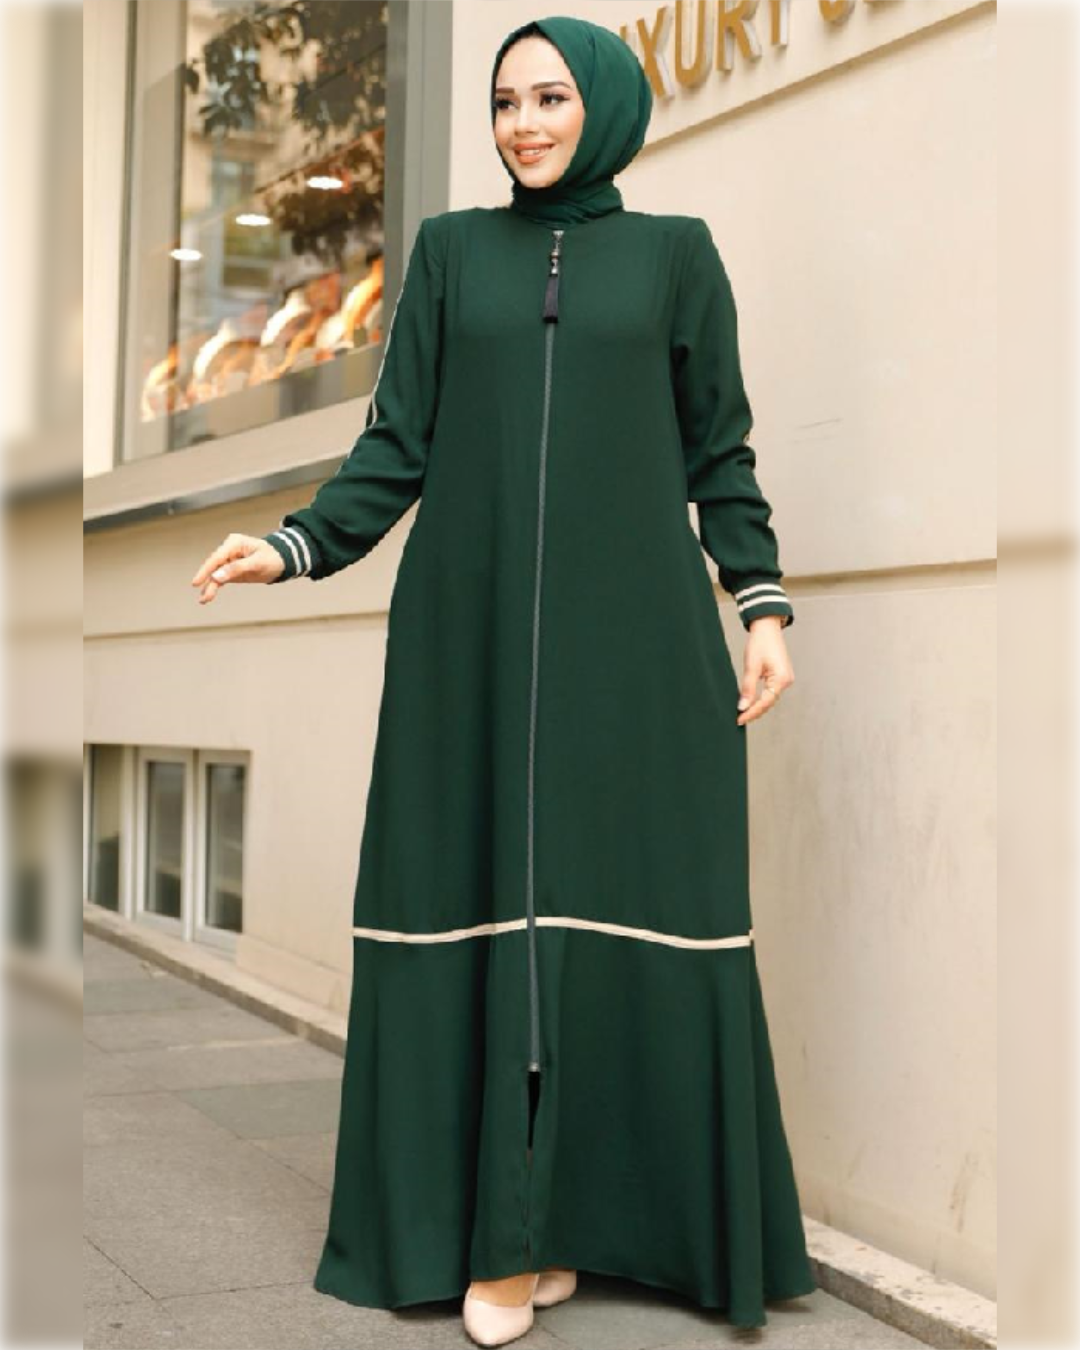 Fatimah Chic Abaya Dress for Summer in Dark Green Shade   عباءة فاطمة الصيفية  باللون الأخضر الغامق الجميل و تفاصيل أنيقة